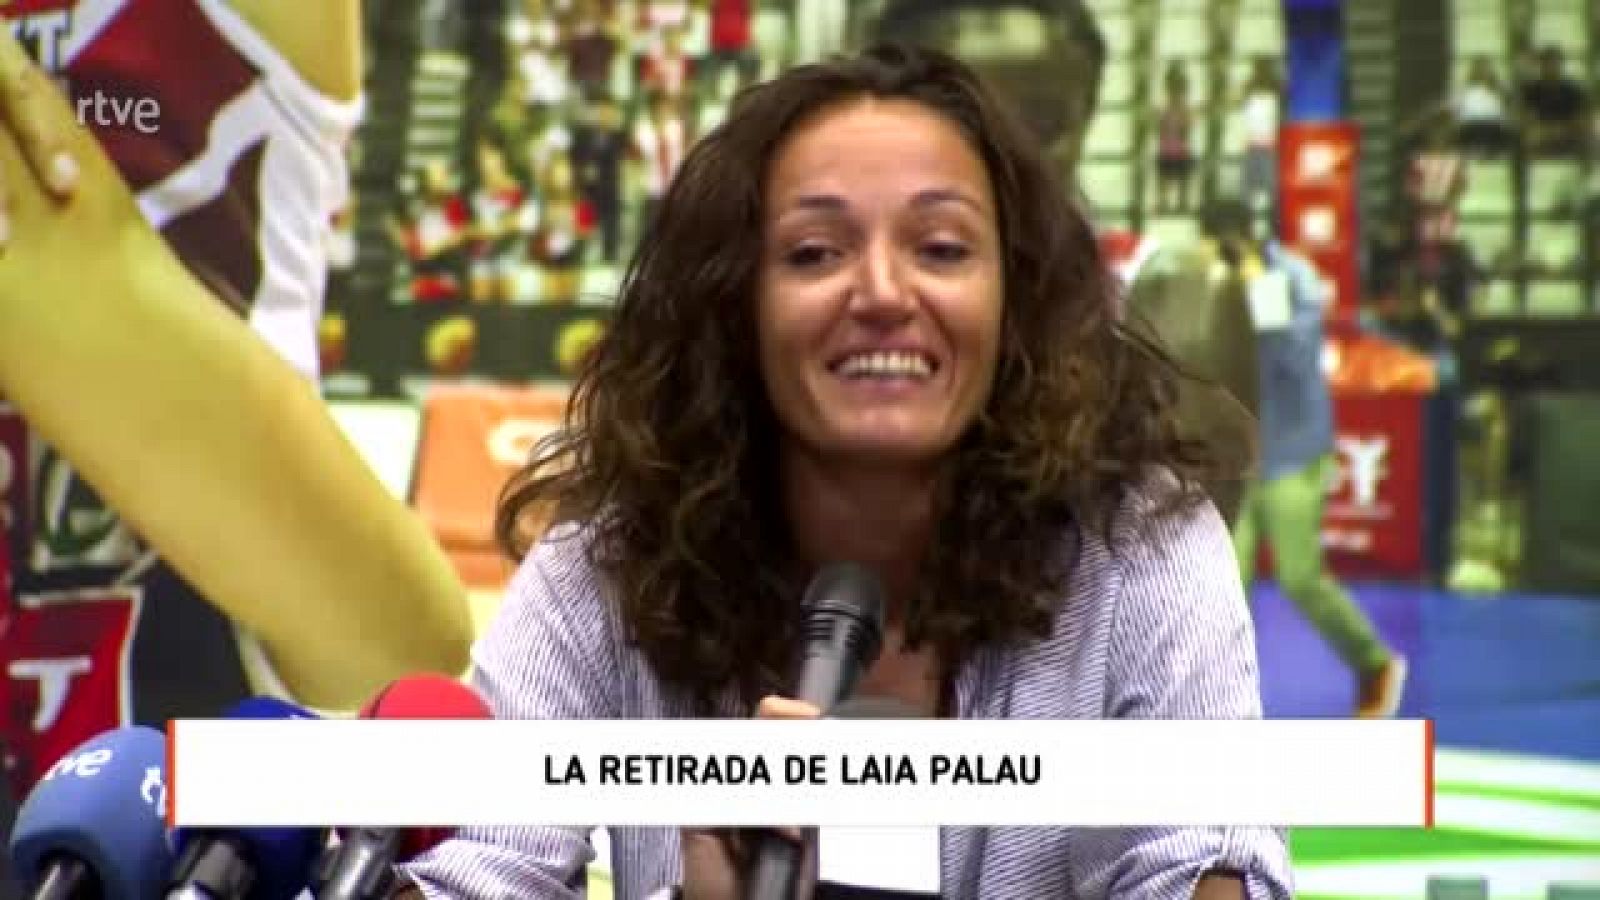 Laia Palau se retira: "No cambiaría nada de lo que he hecho"